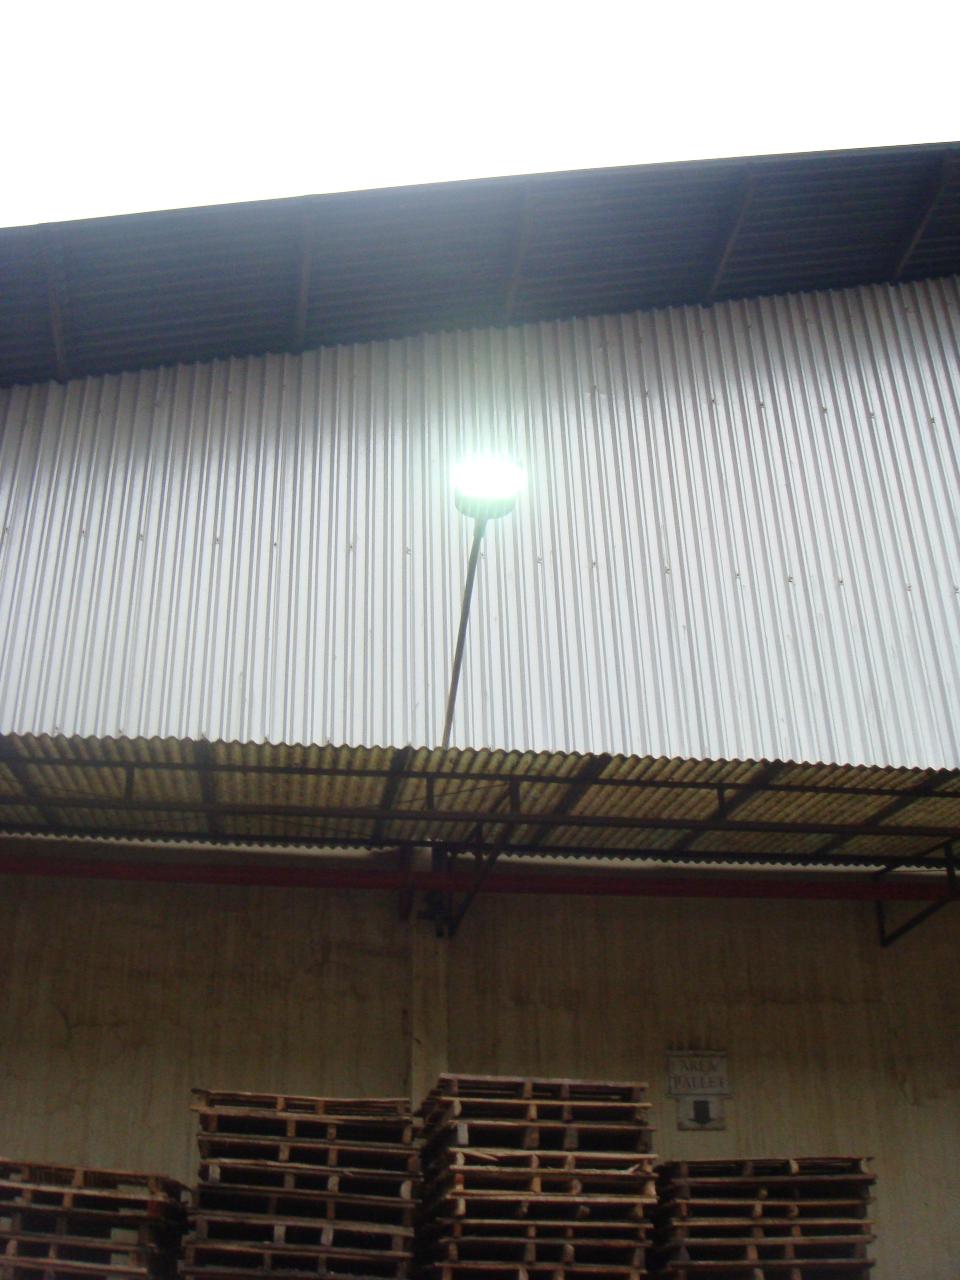 ผลงานการติดตั้งโคมไฟถนน LED (LED STREET LIGHT)